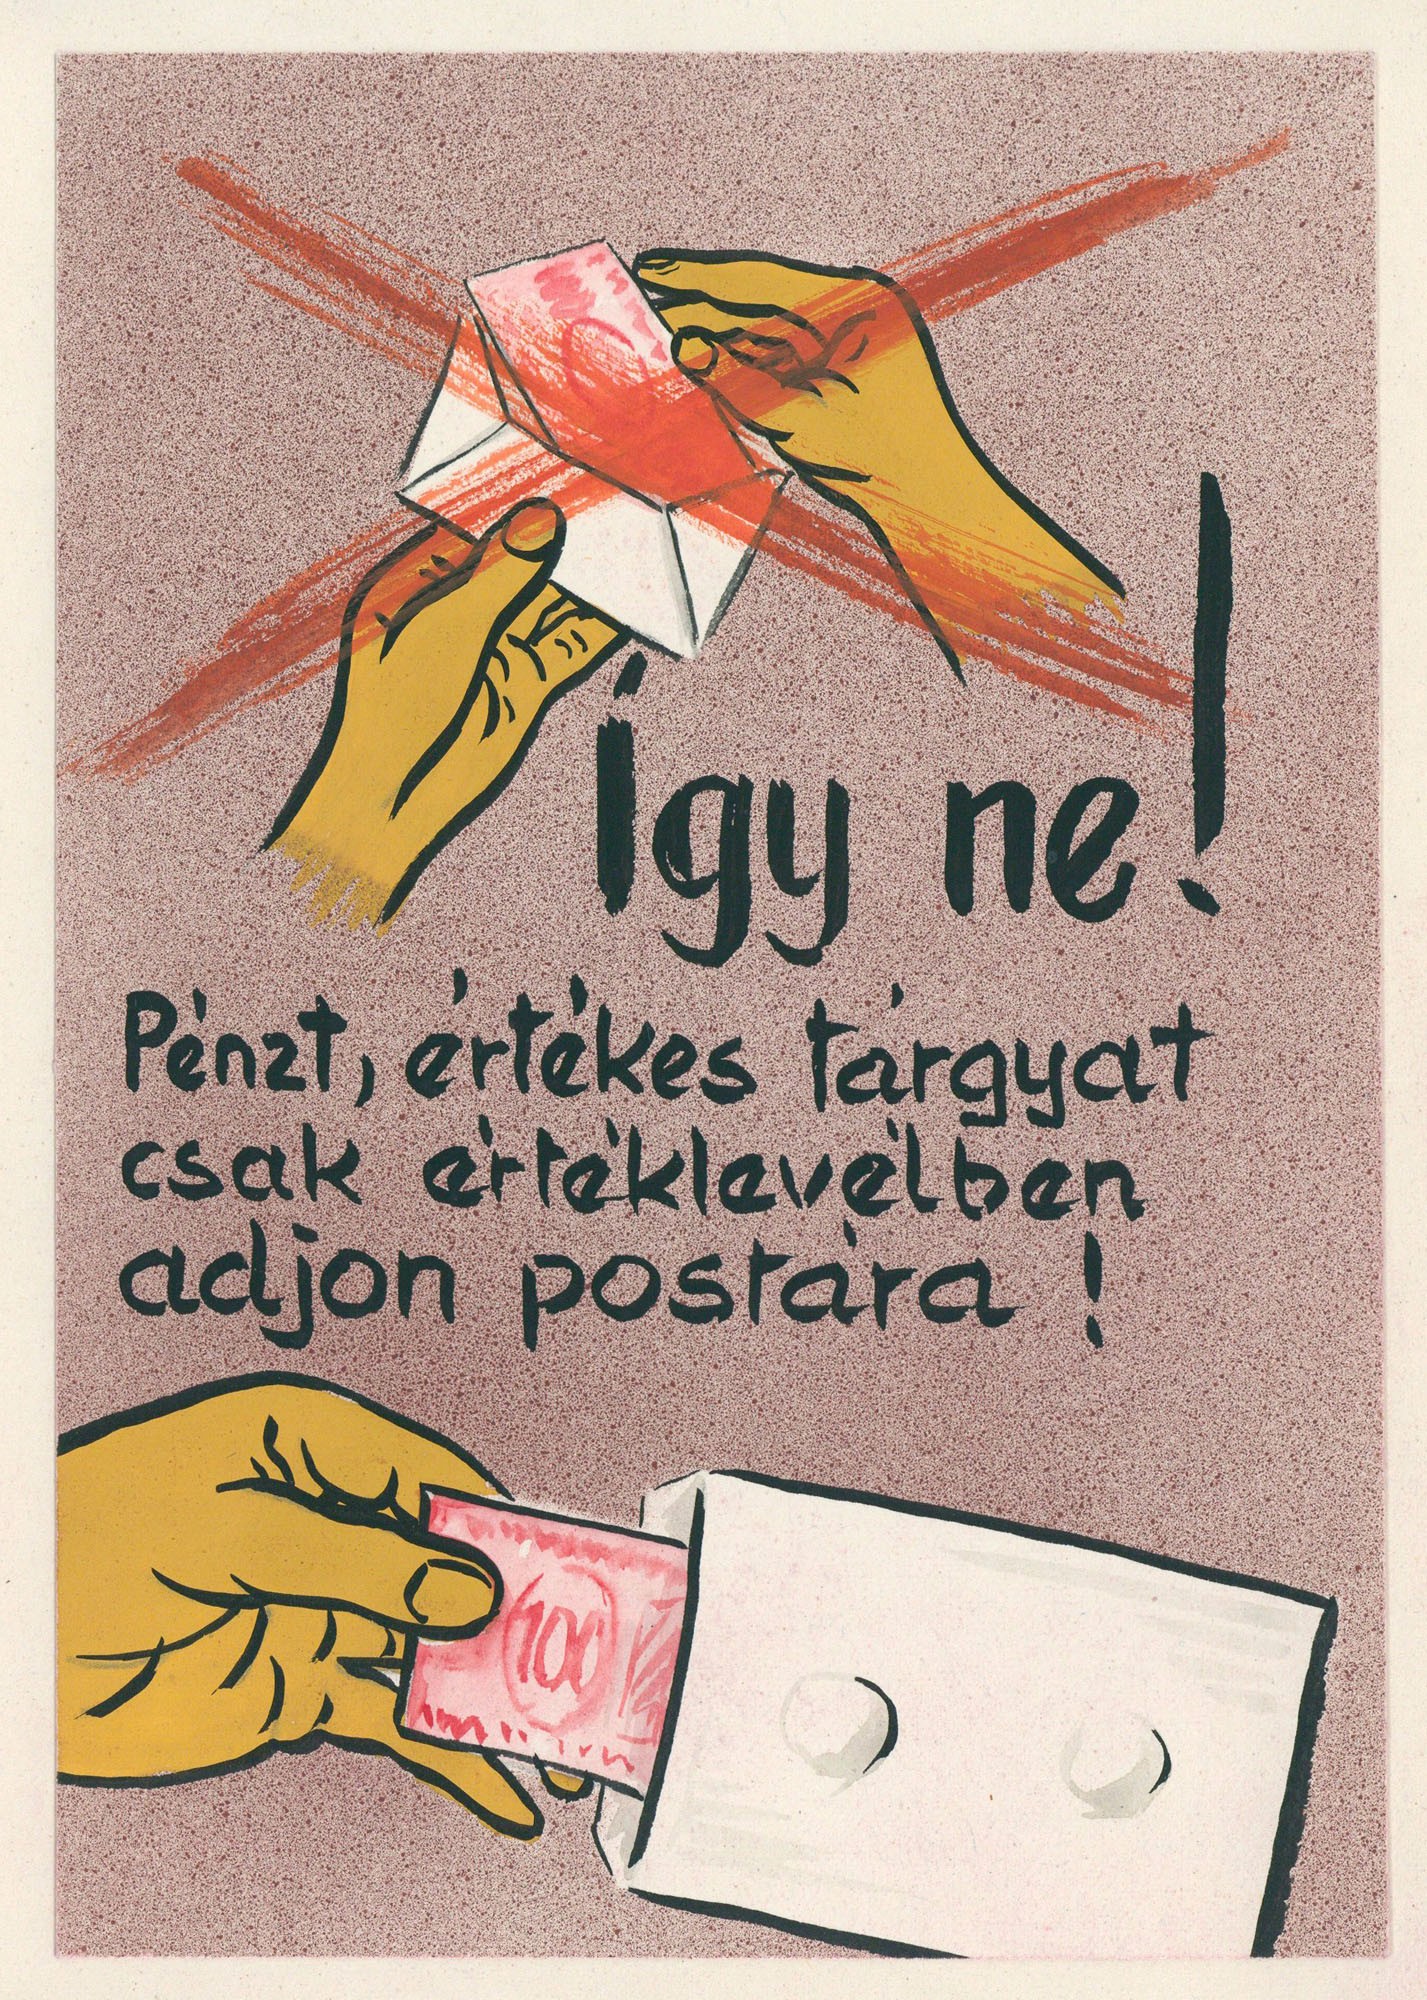 Postai szolgáltatást segítő plakát vagy kiadvány terve. (Postamúzeum CC BY-NC-SA)